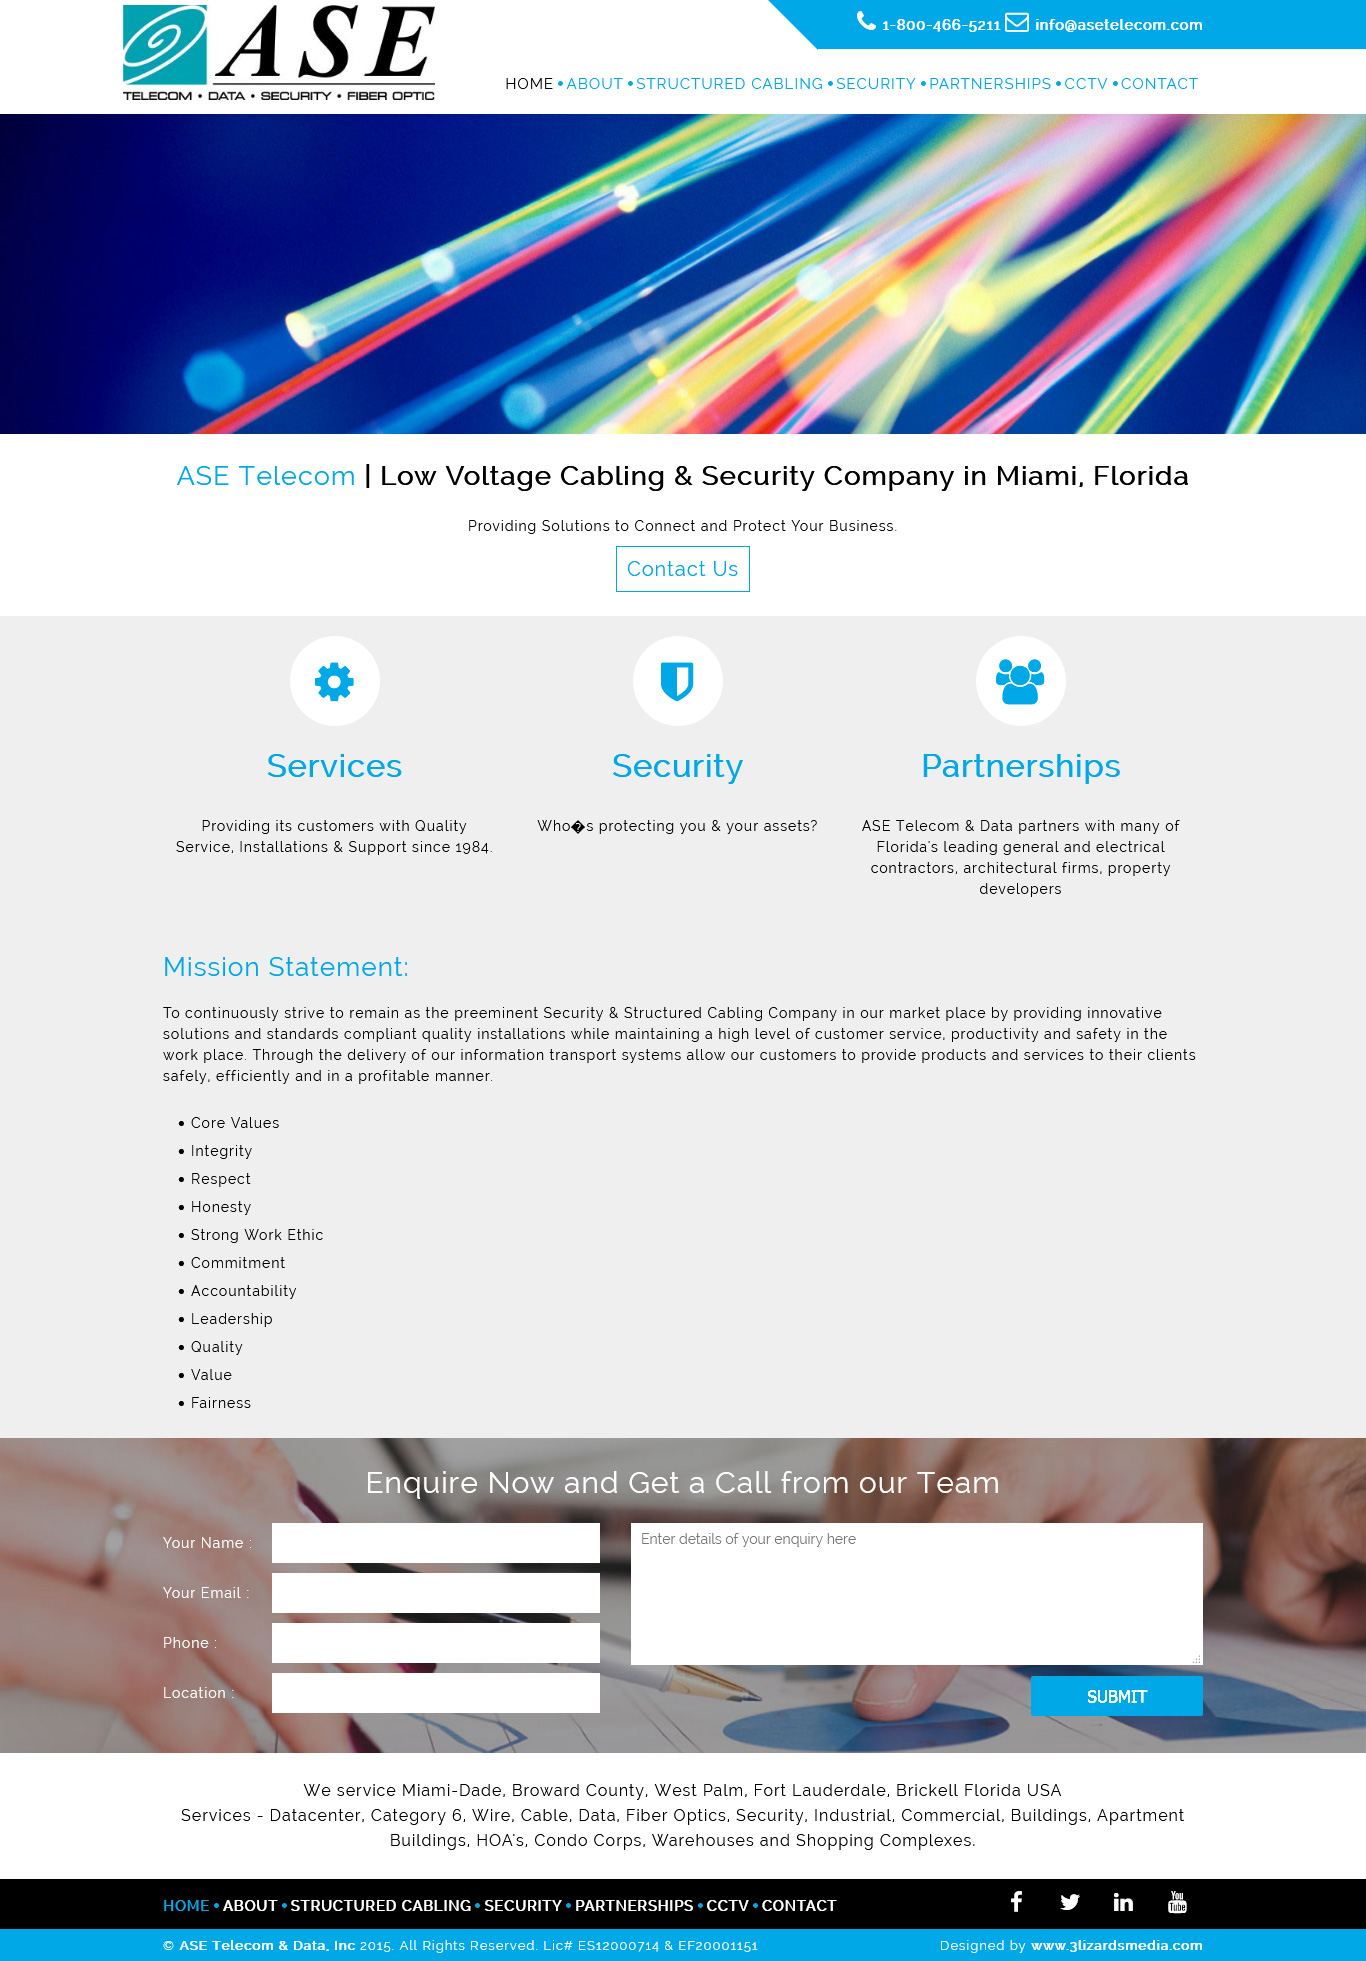 ASE Telecom Website Design